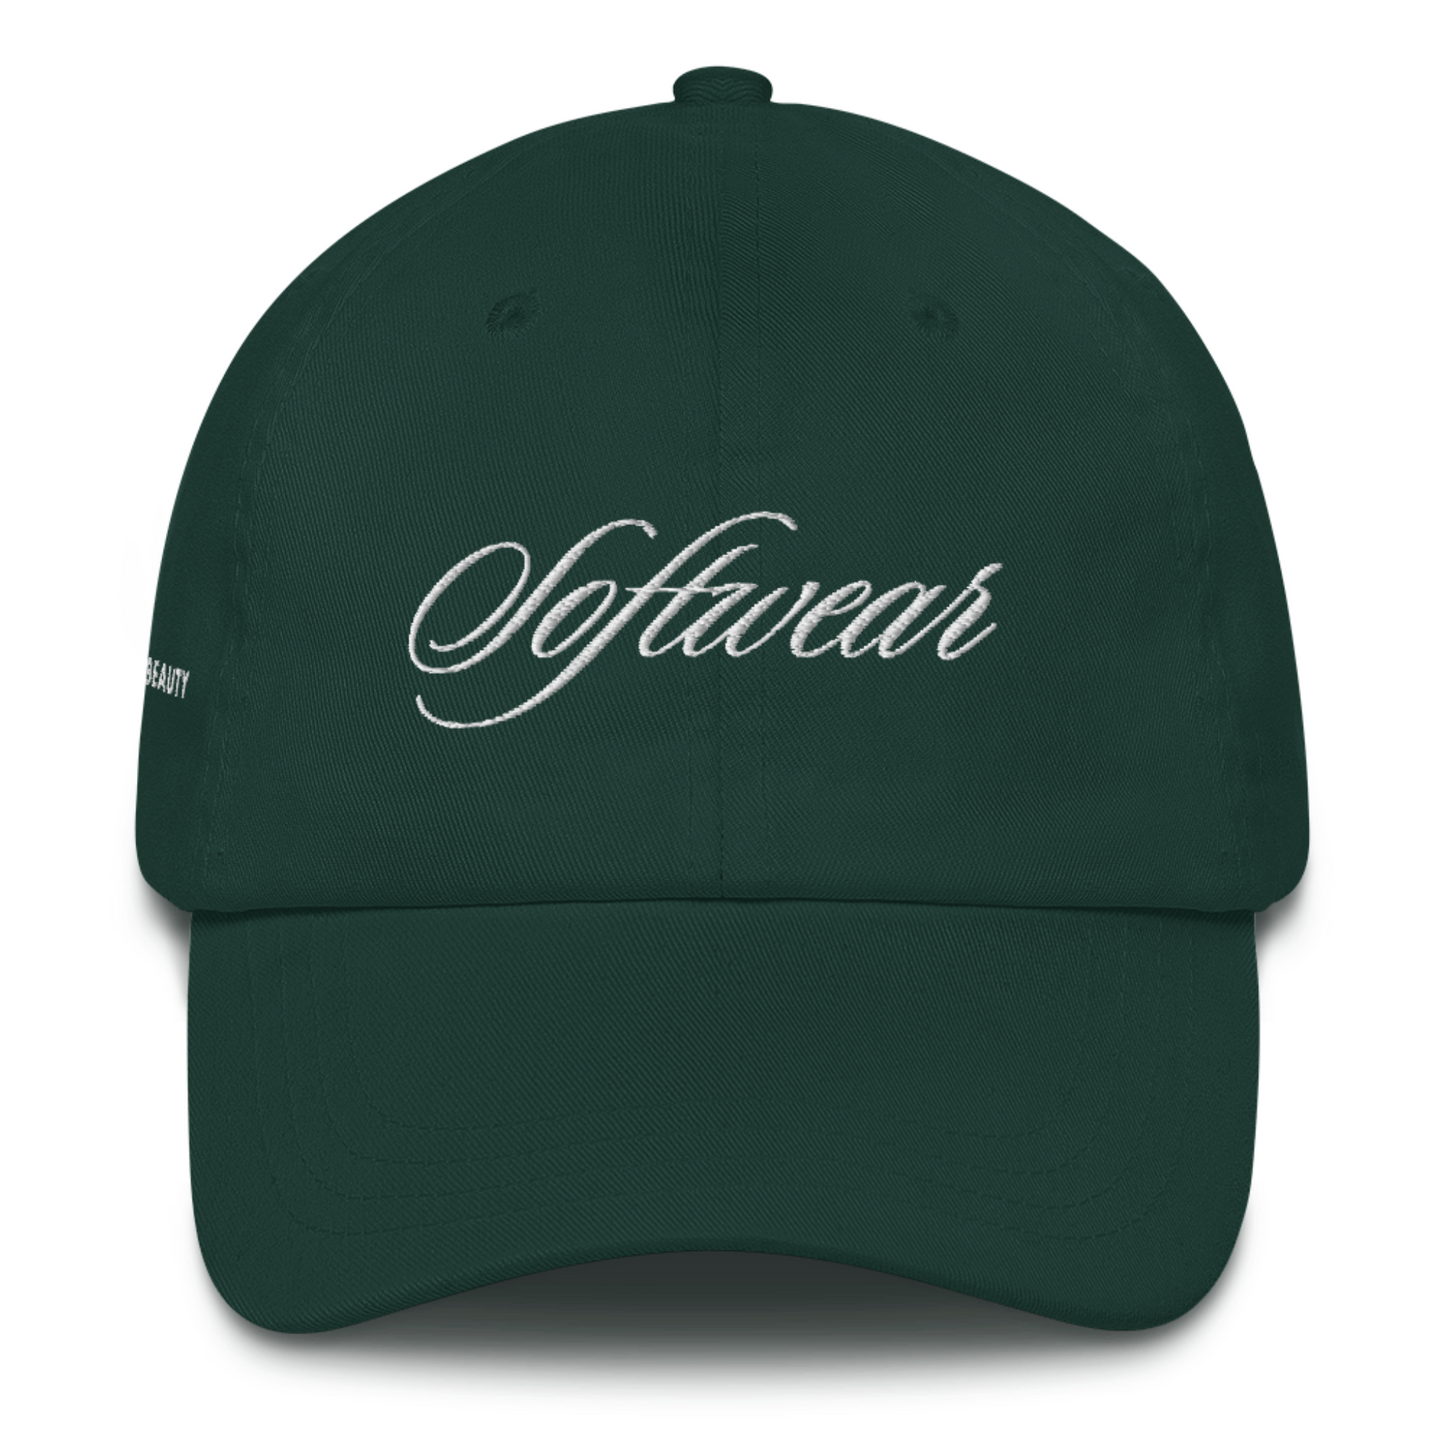 Softwear Script Hat in Evergreen